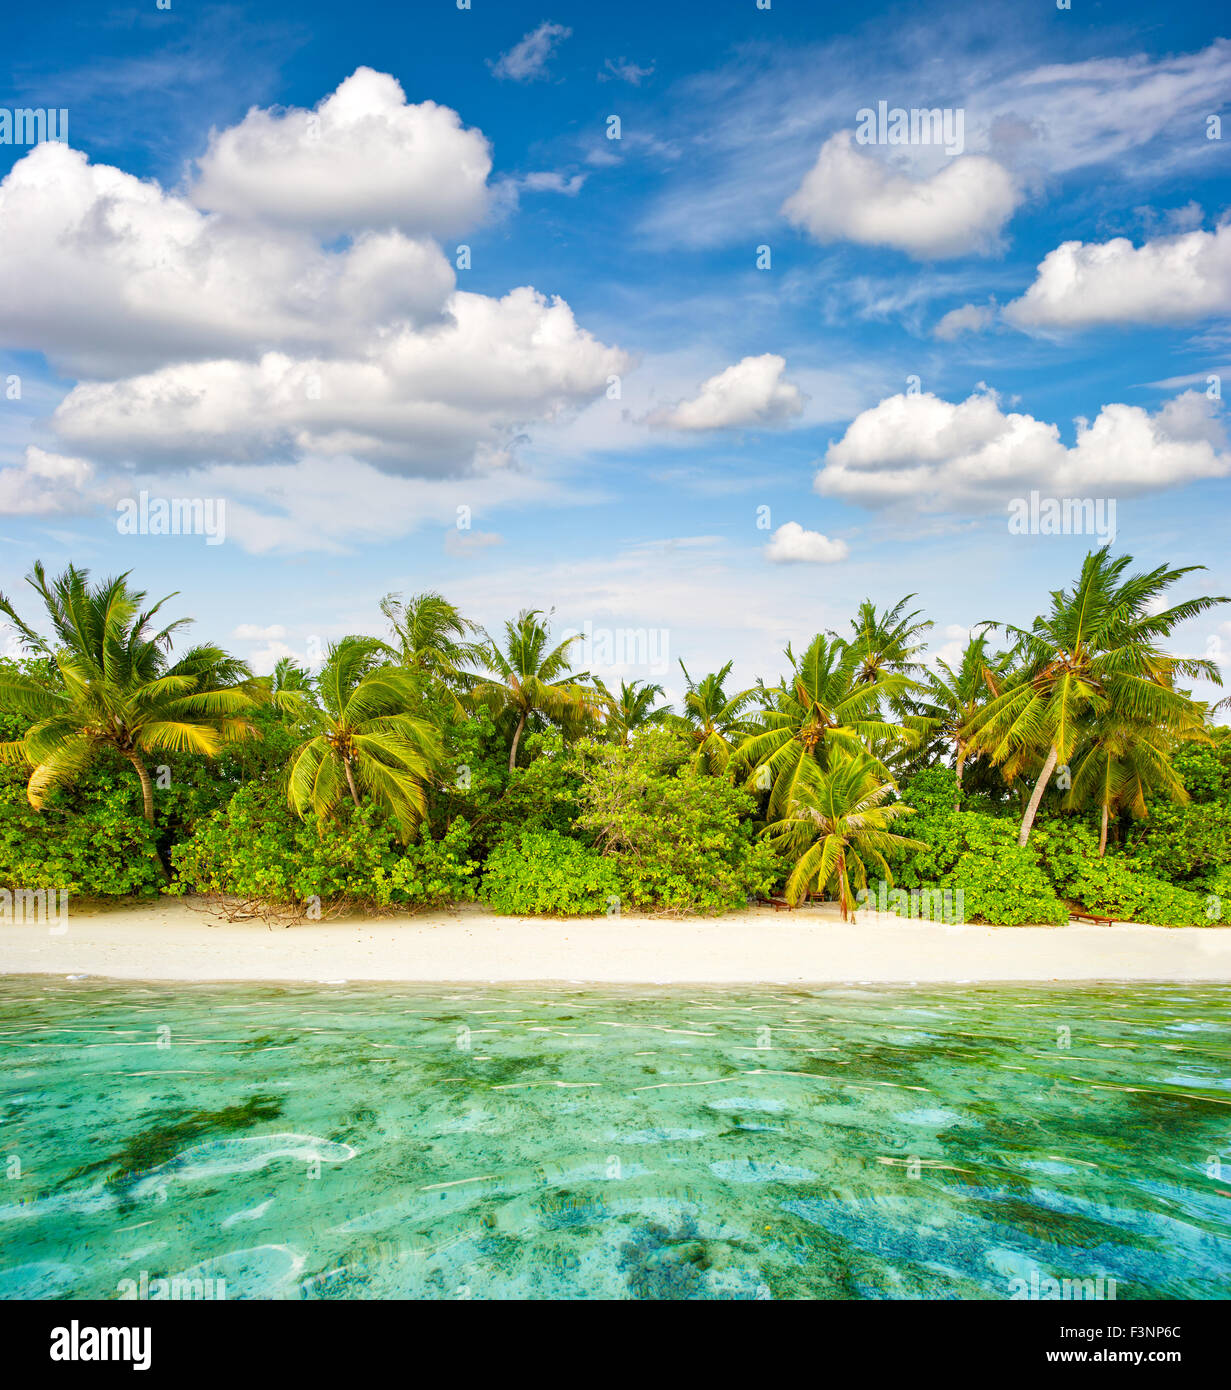 Plage de sable avec des palmiers et ciel nuageux ciel bleu. Paysage de l'île tropicale Banque D'Images